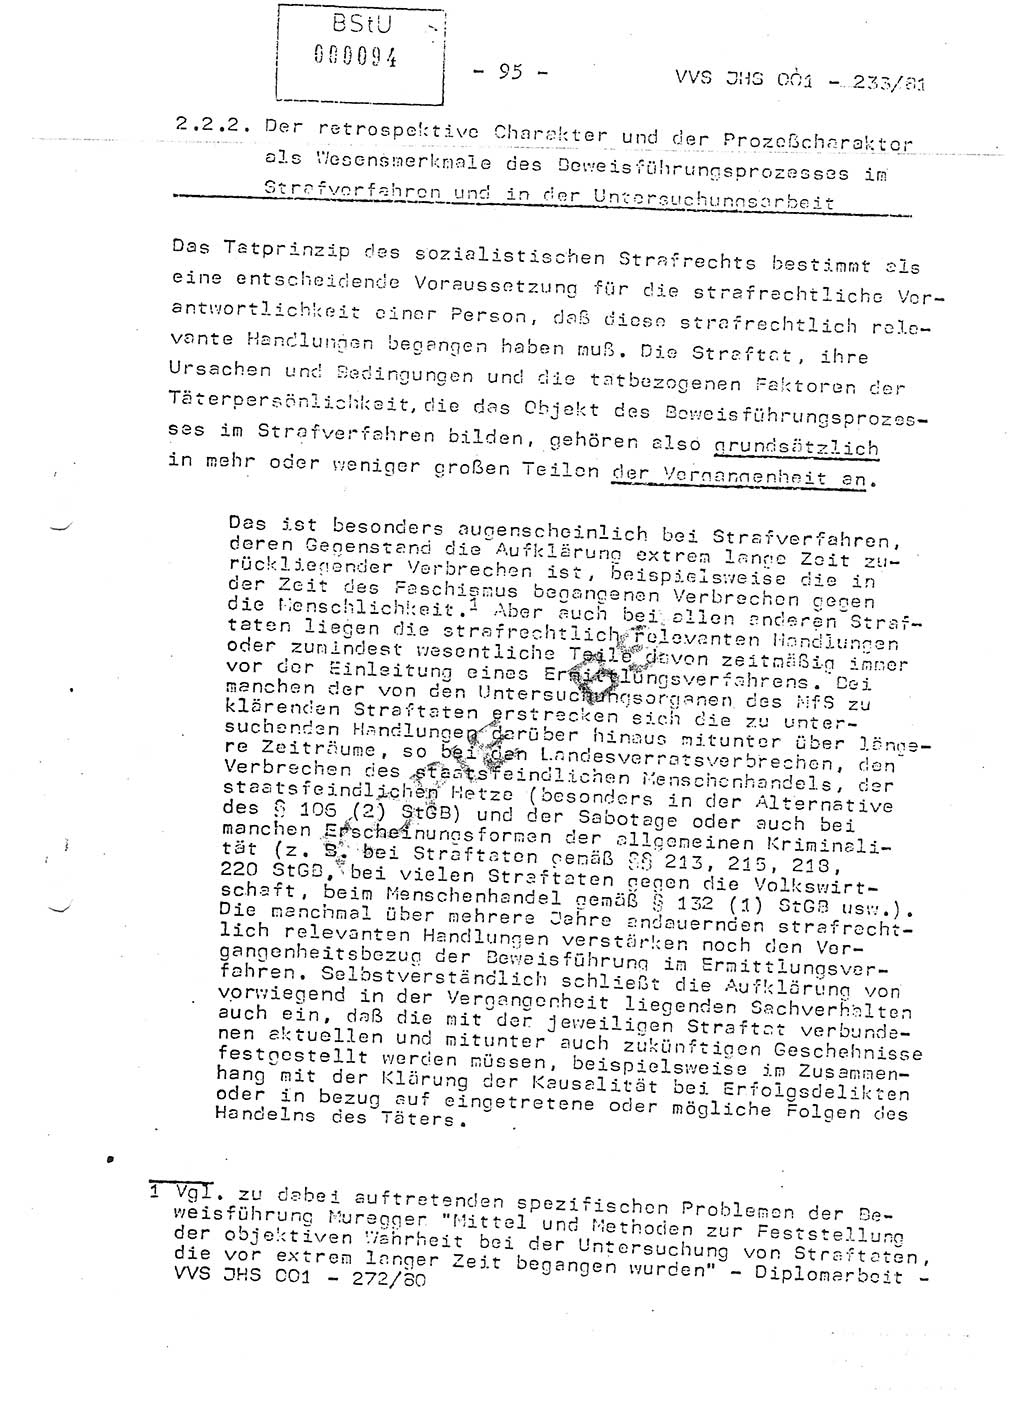 Dissertation Oberstleutnant Horst Zank (JHS), Oberstleutnant Dr. Karl-Heinz Knoblauch (JHS), Oberstleutnant Gustav-Adolf Kowalewski (HA Ⅸ), Oberstleutnant Wolfgang Plötner (HA Ⅸ), Ministerium für Staatssicherheit (MfS) [Deutsche Demokratische Republik (DDR)], Juristische Hochschule (JHS), Vertrauliche Verschlußsache (VVS) o001-233/81, Potsdam 1981, Blatt 95 (Diss. MfS DDR JHS VVS o001-233/81 1981, Bl. 95)